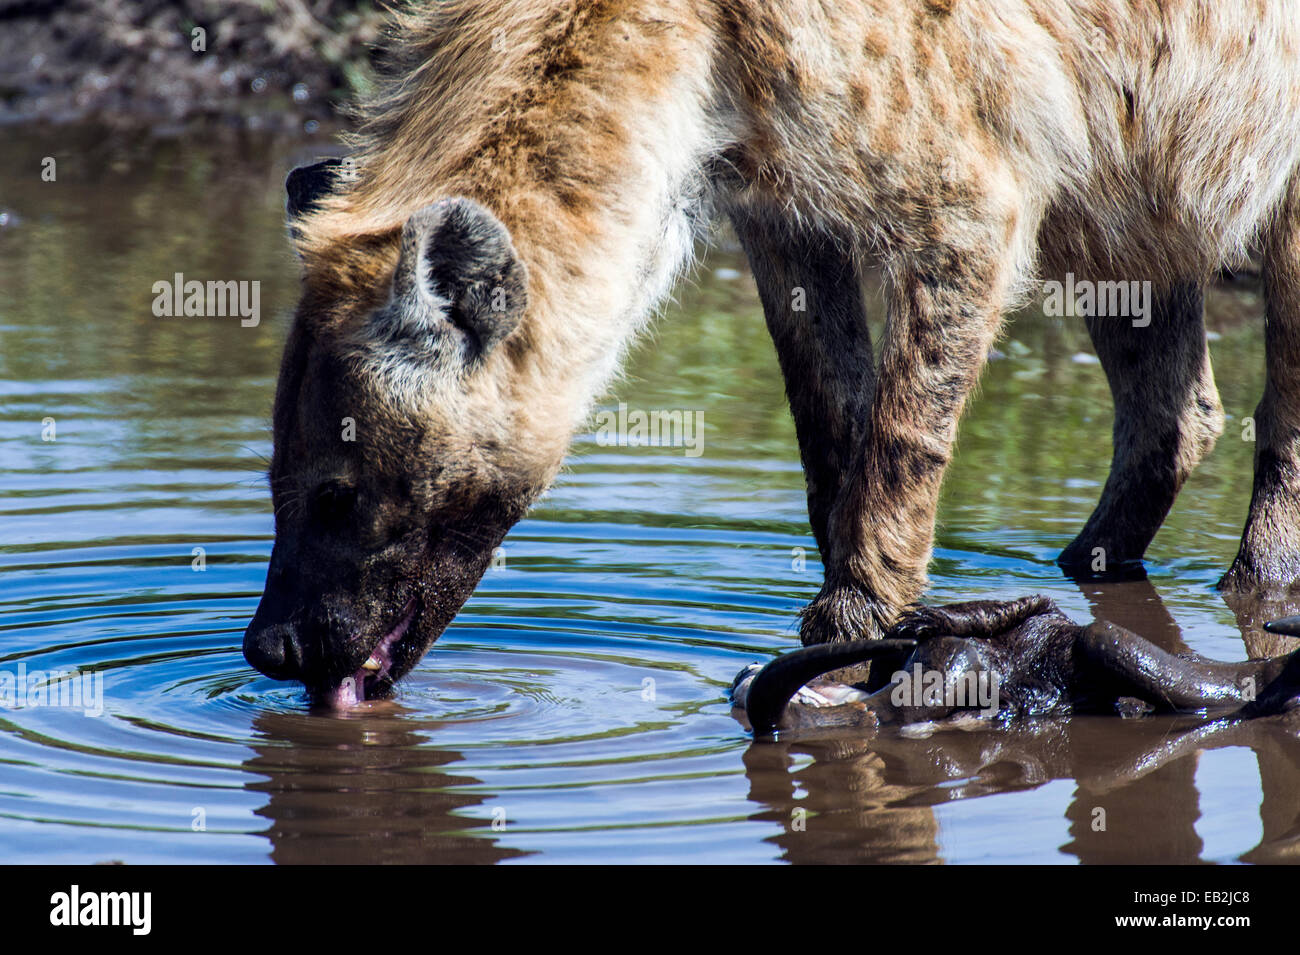 Un fat-curva Spotted Hyena bebiendo de un abrevadero después de alimentar el ñu azul en un canal. Foto de stock